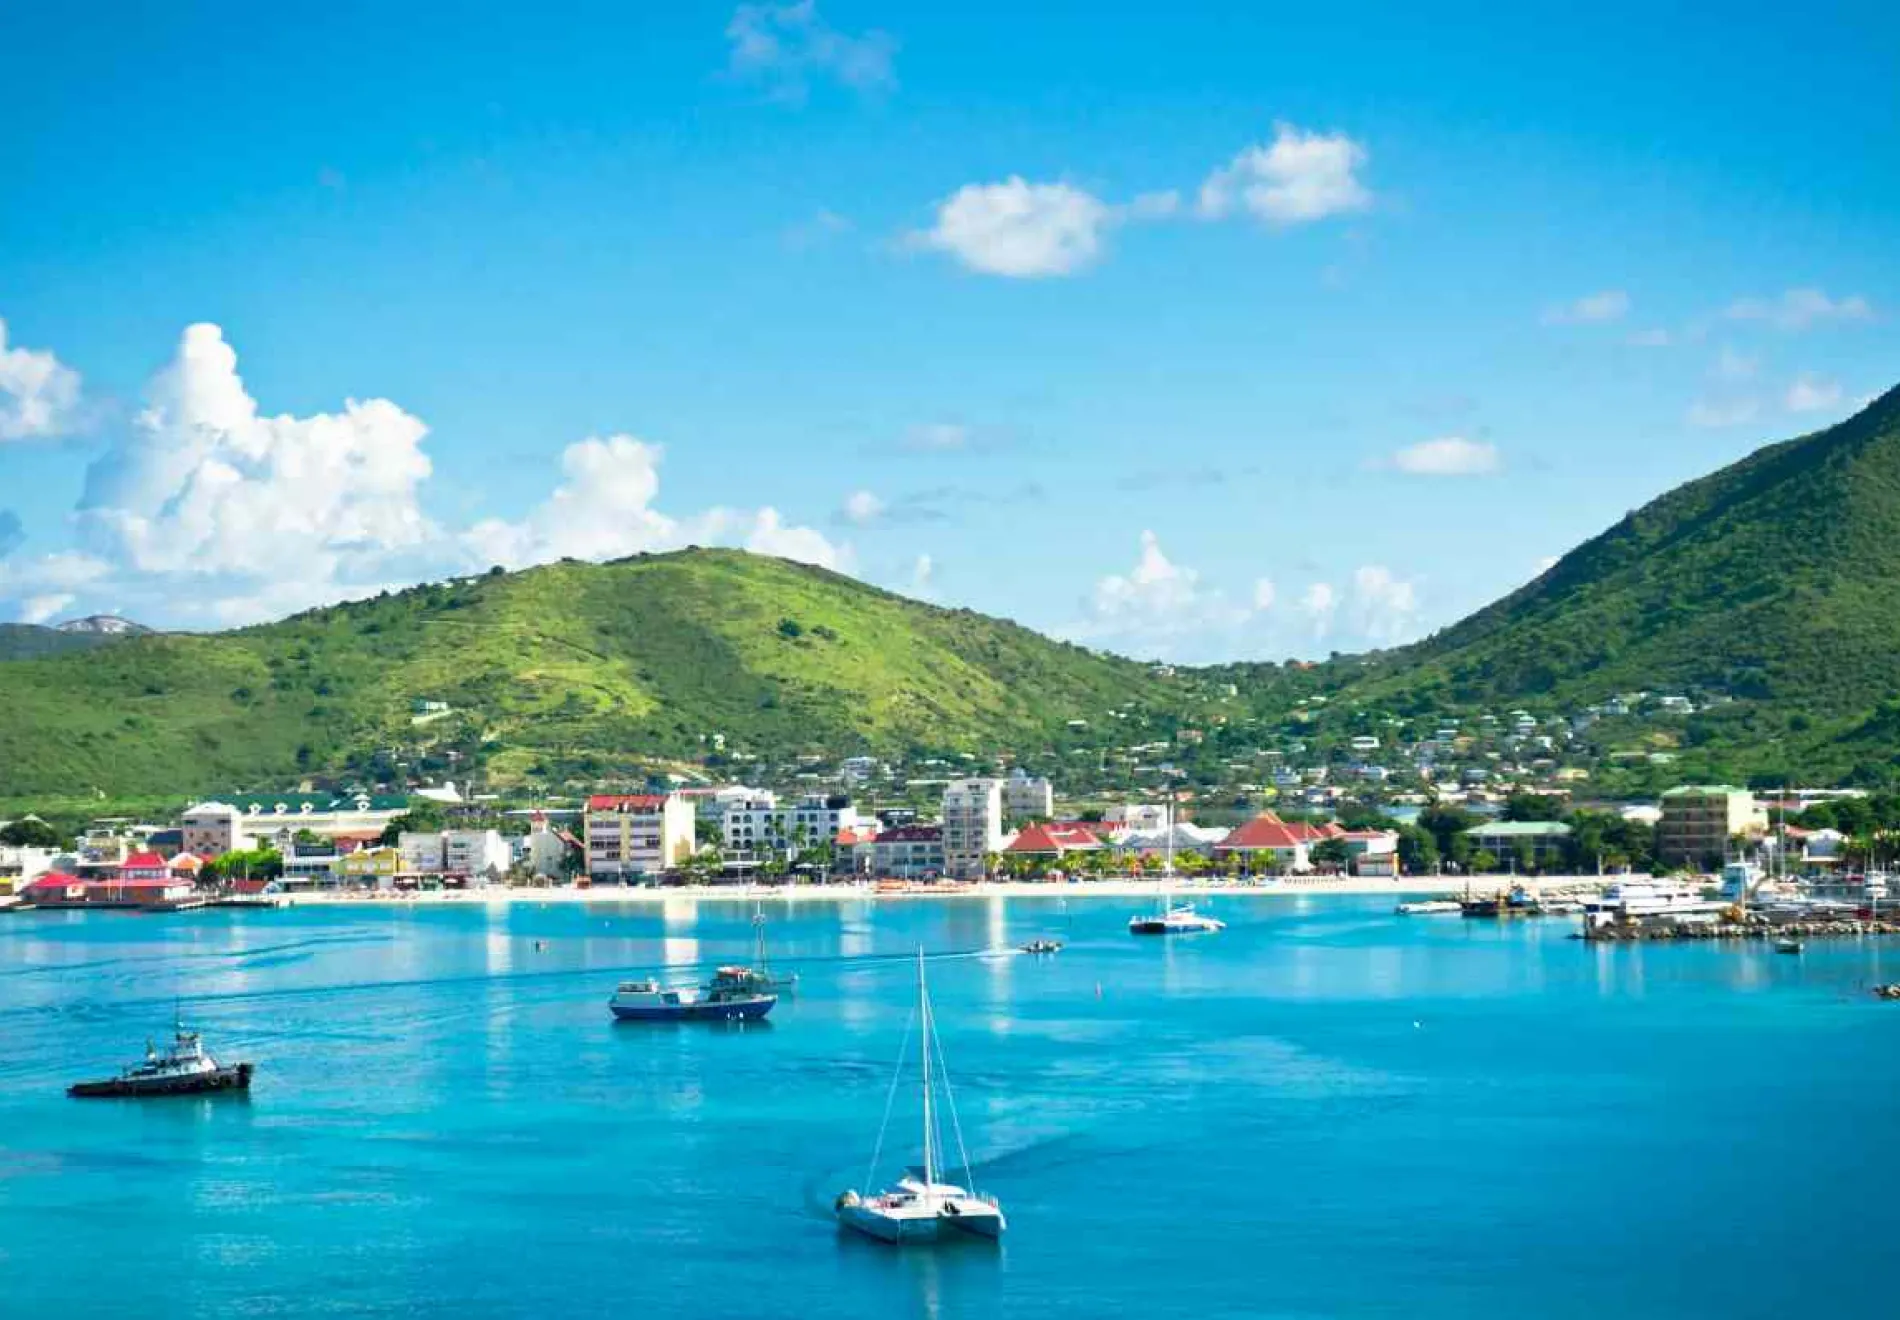 Beautiful-panorama-of-Philipsburg-Saint-Martin-Caribbean